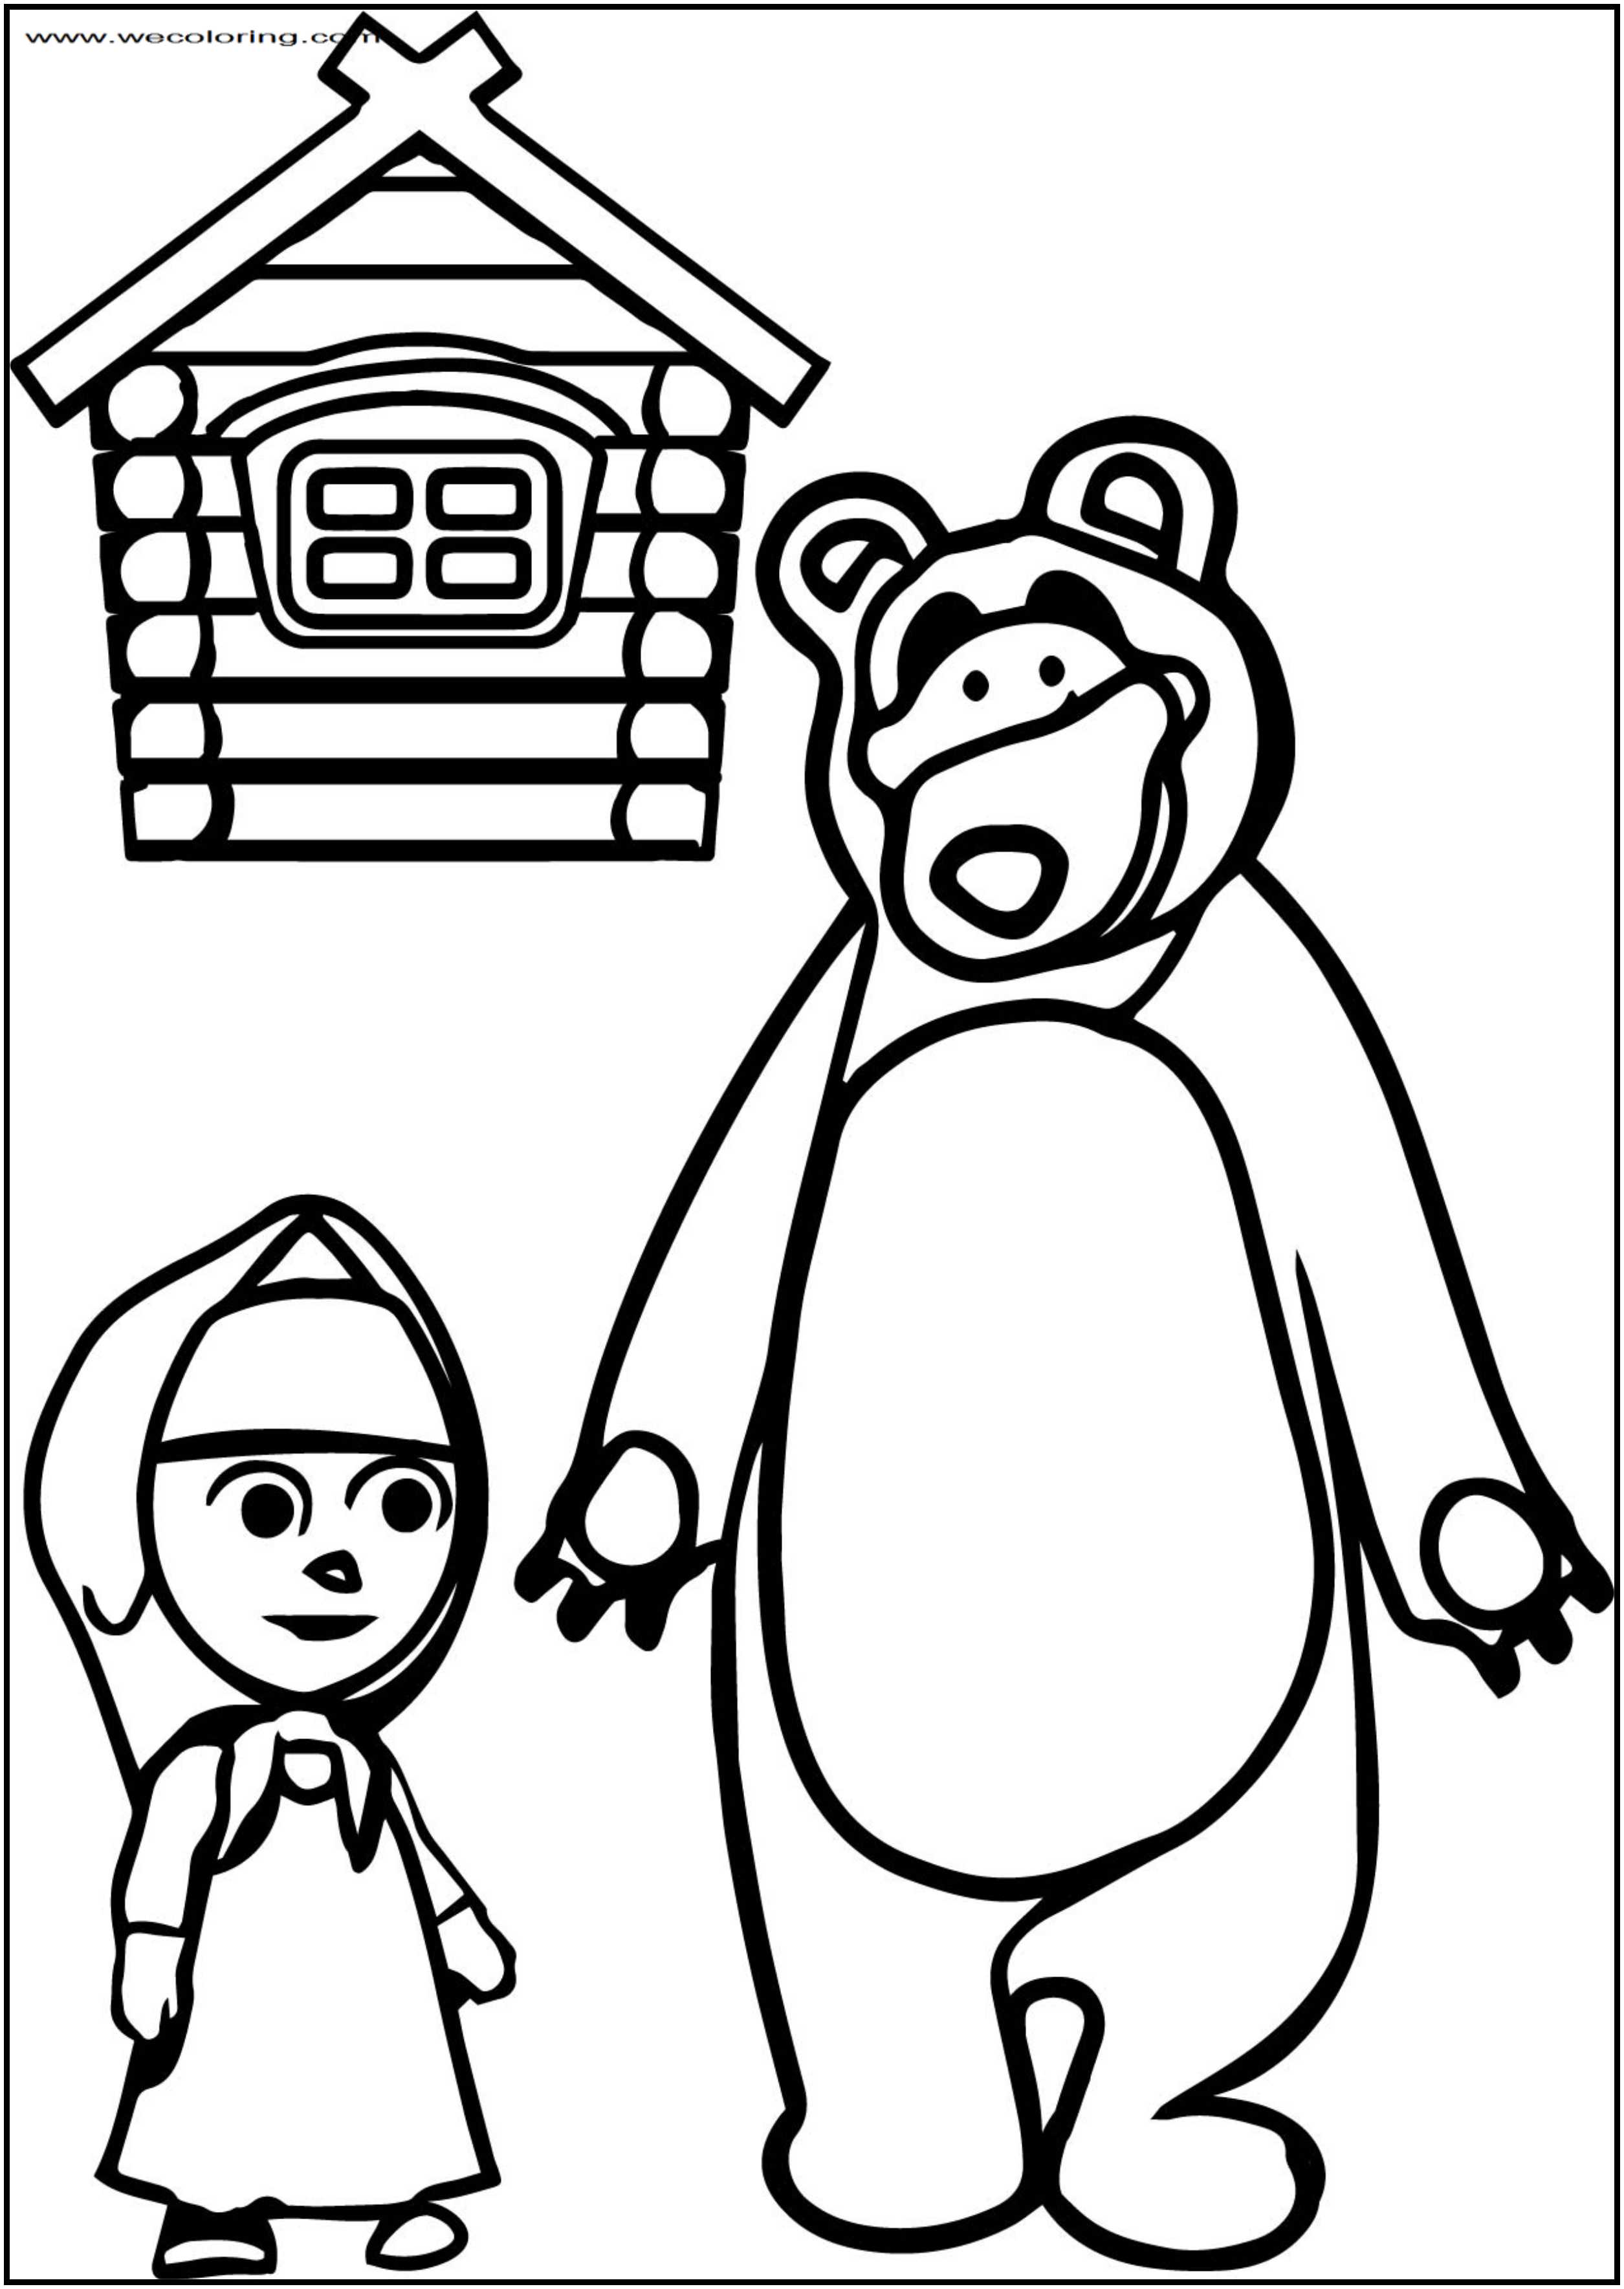 Раскраска маша и медведь 2. Раскраска. Маша и медведь. Раскраска дом Маши и медведя. Маша и медведь рисунок. Маша и медведь картинки раскраски.